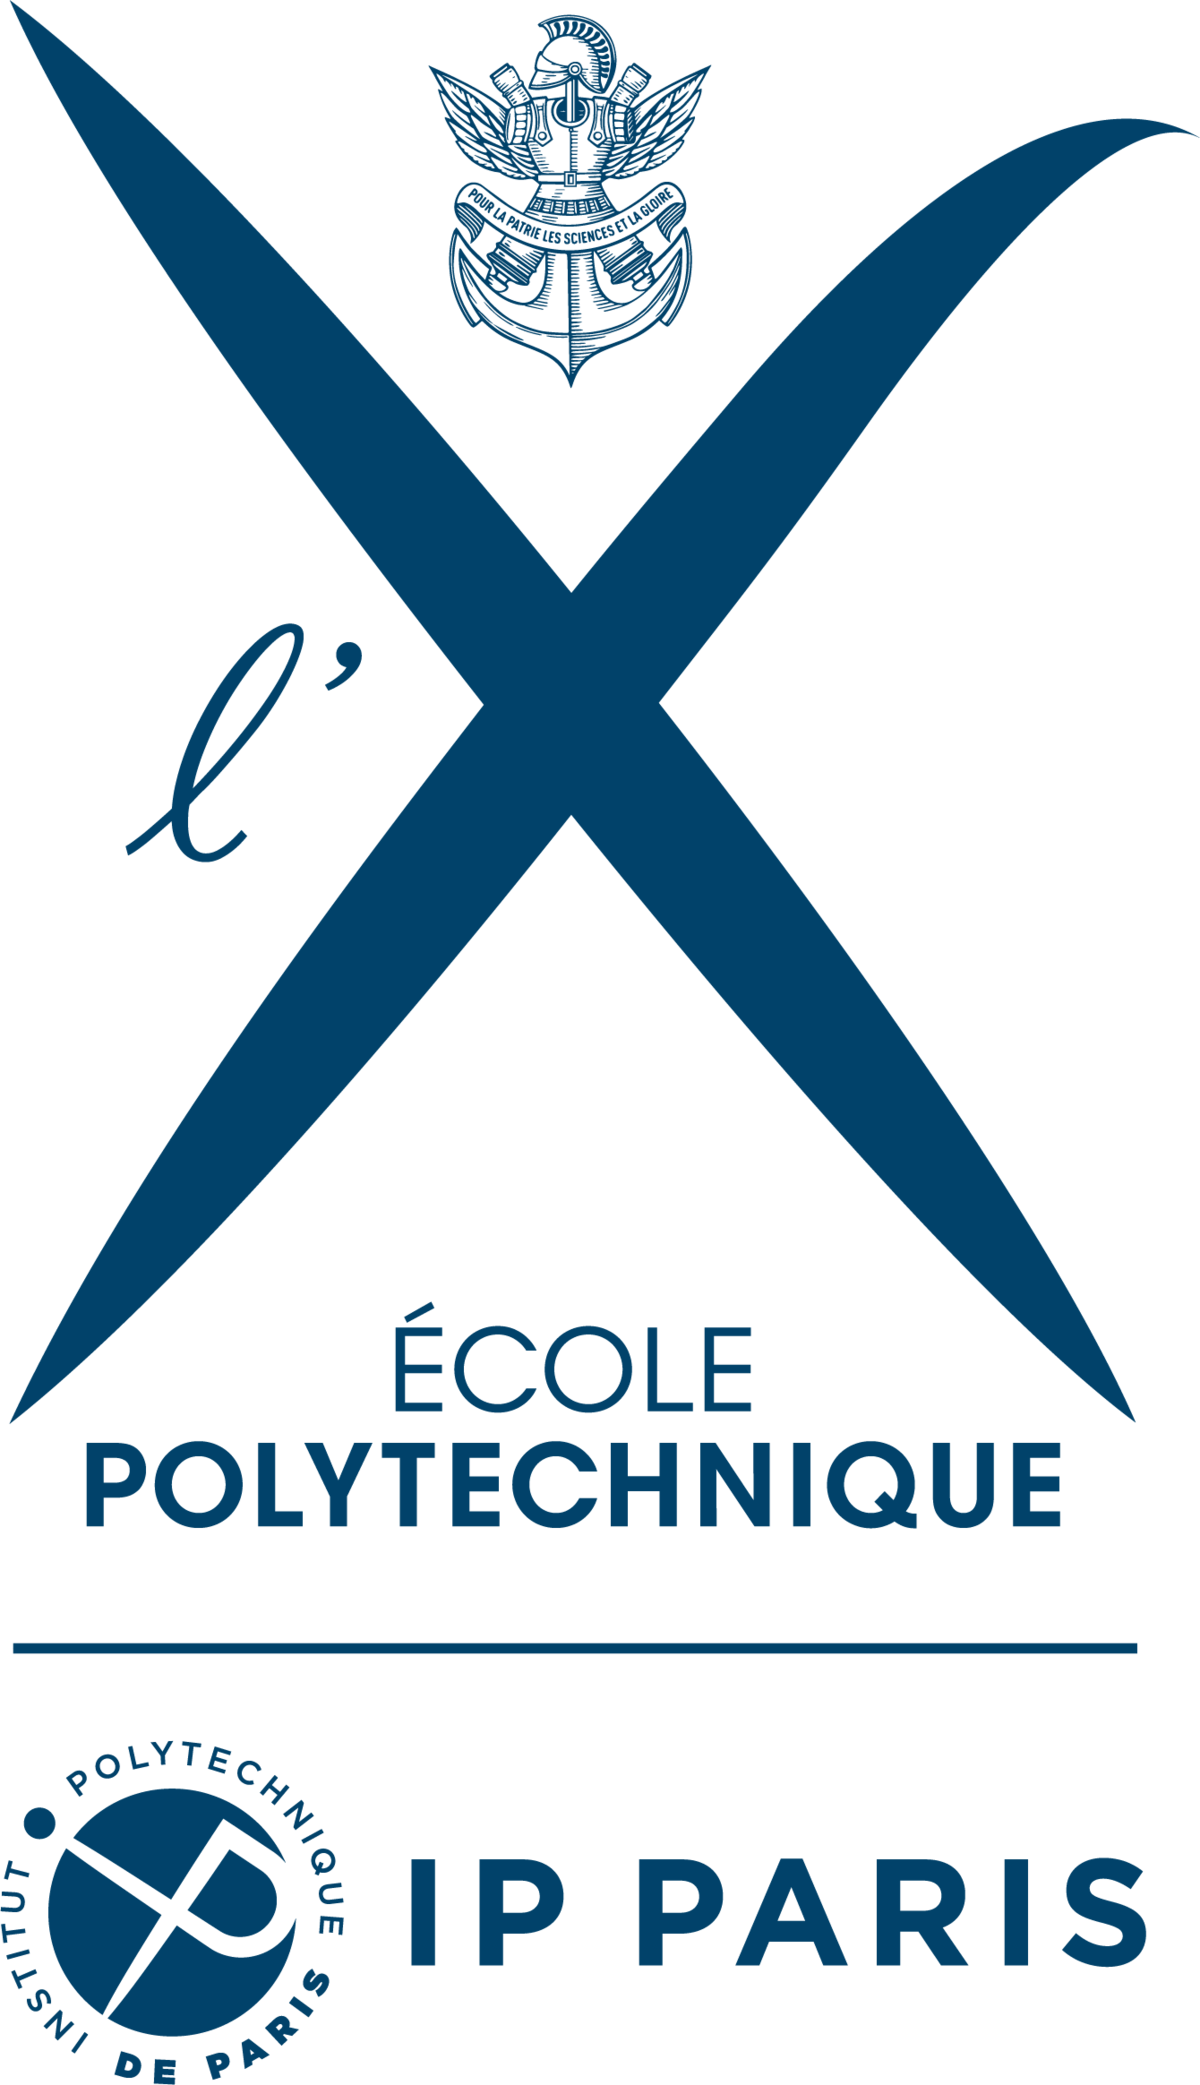 Secteur polytechnique (Palaiseau) – Antenne GATE  – administrative support